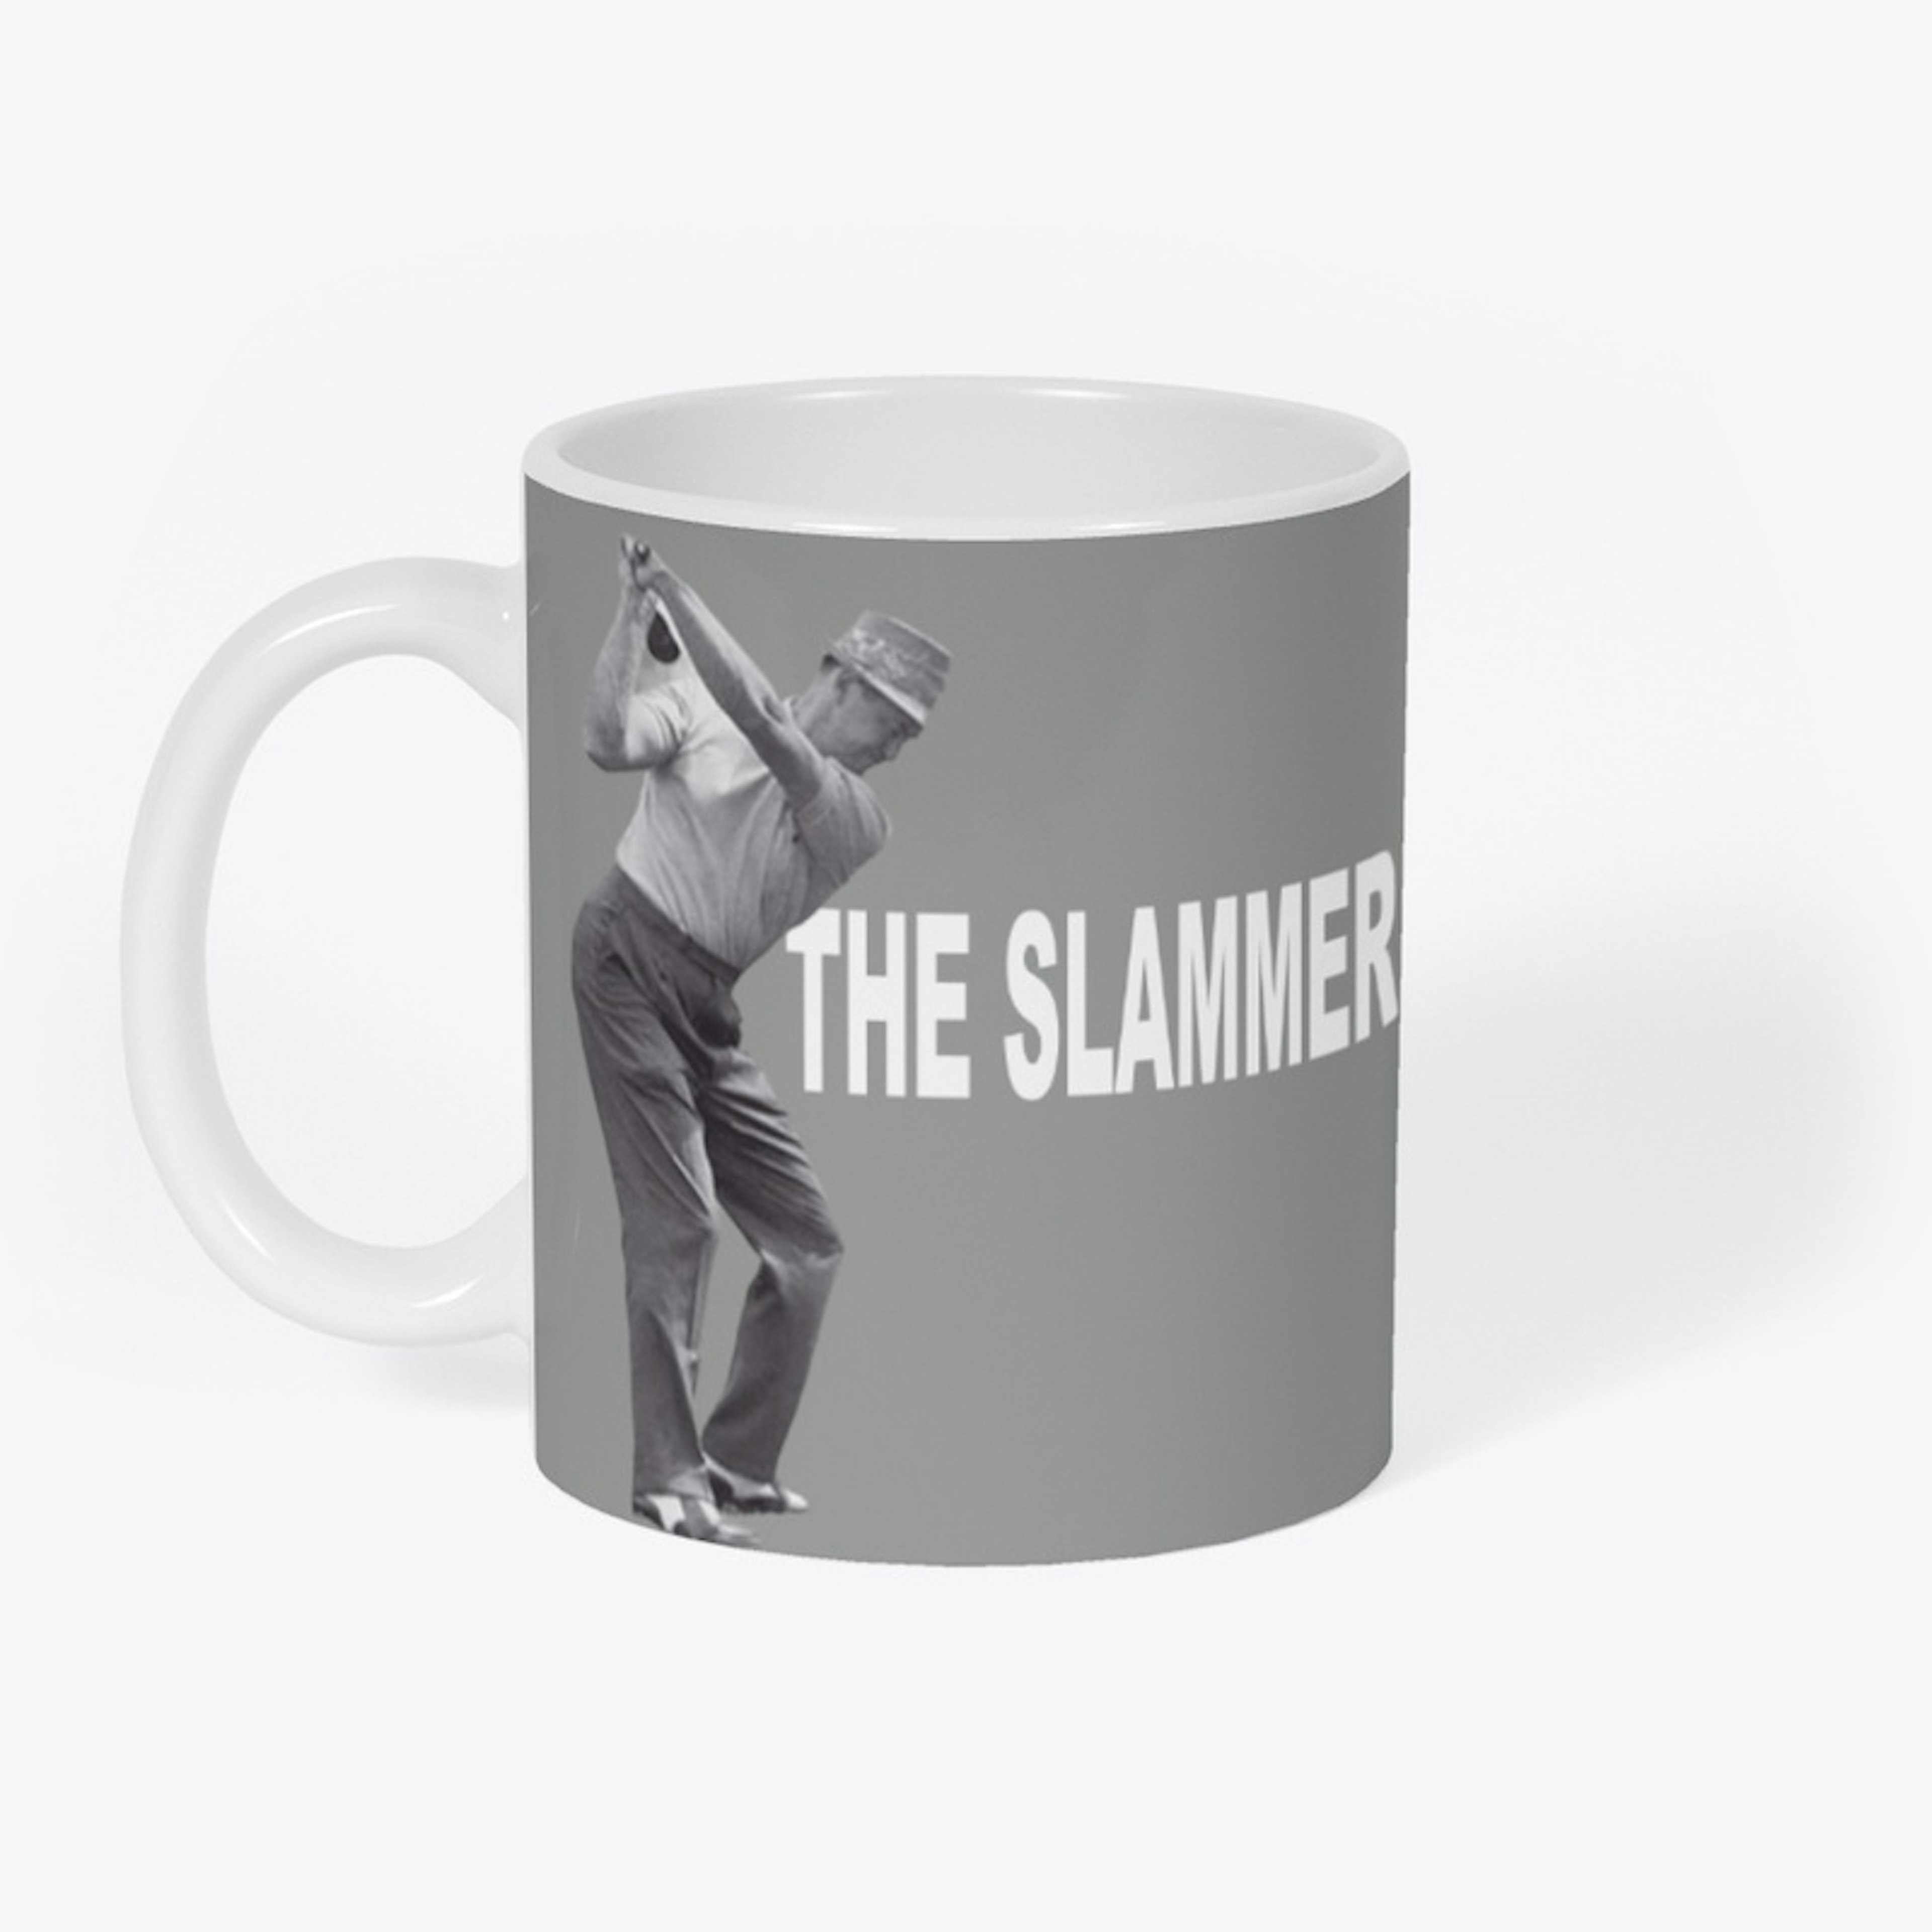 BIYS The slammer